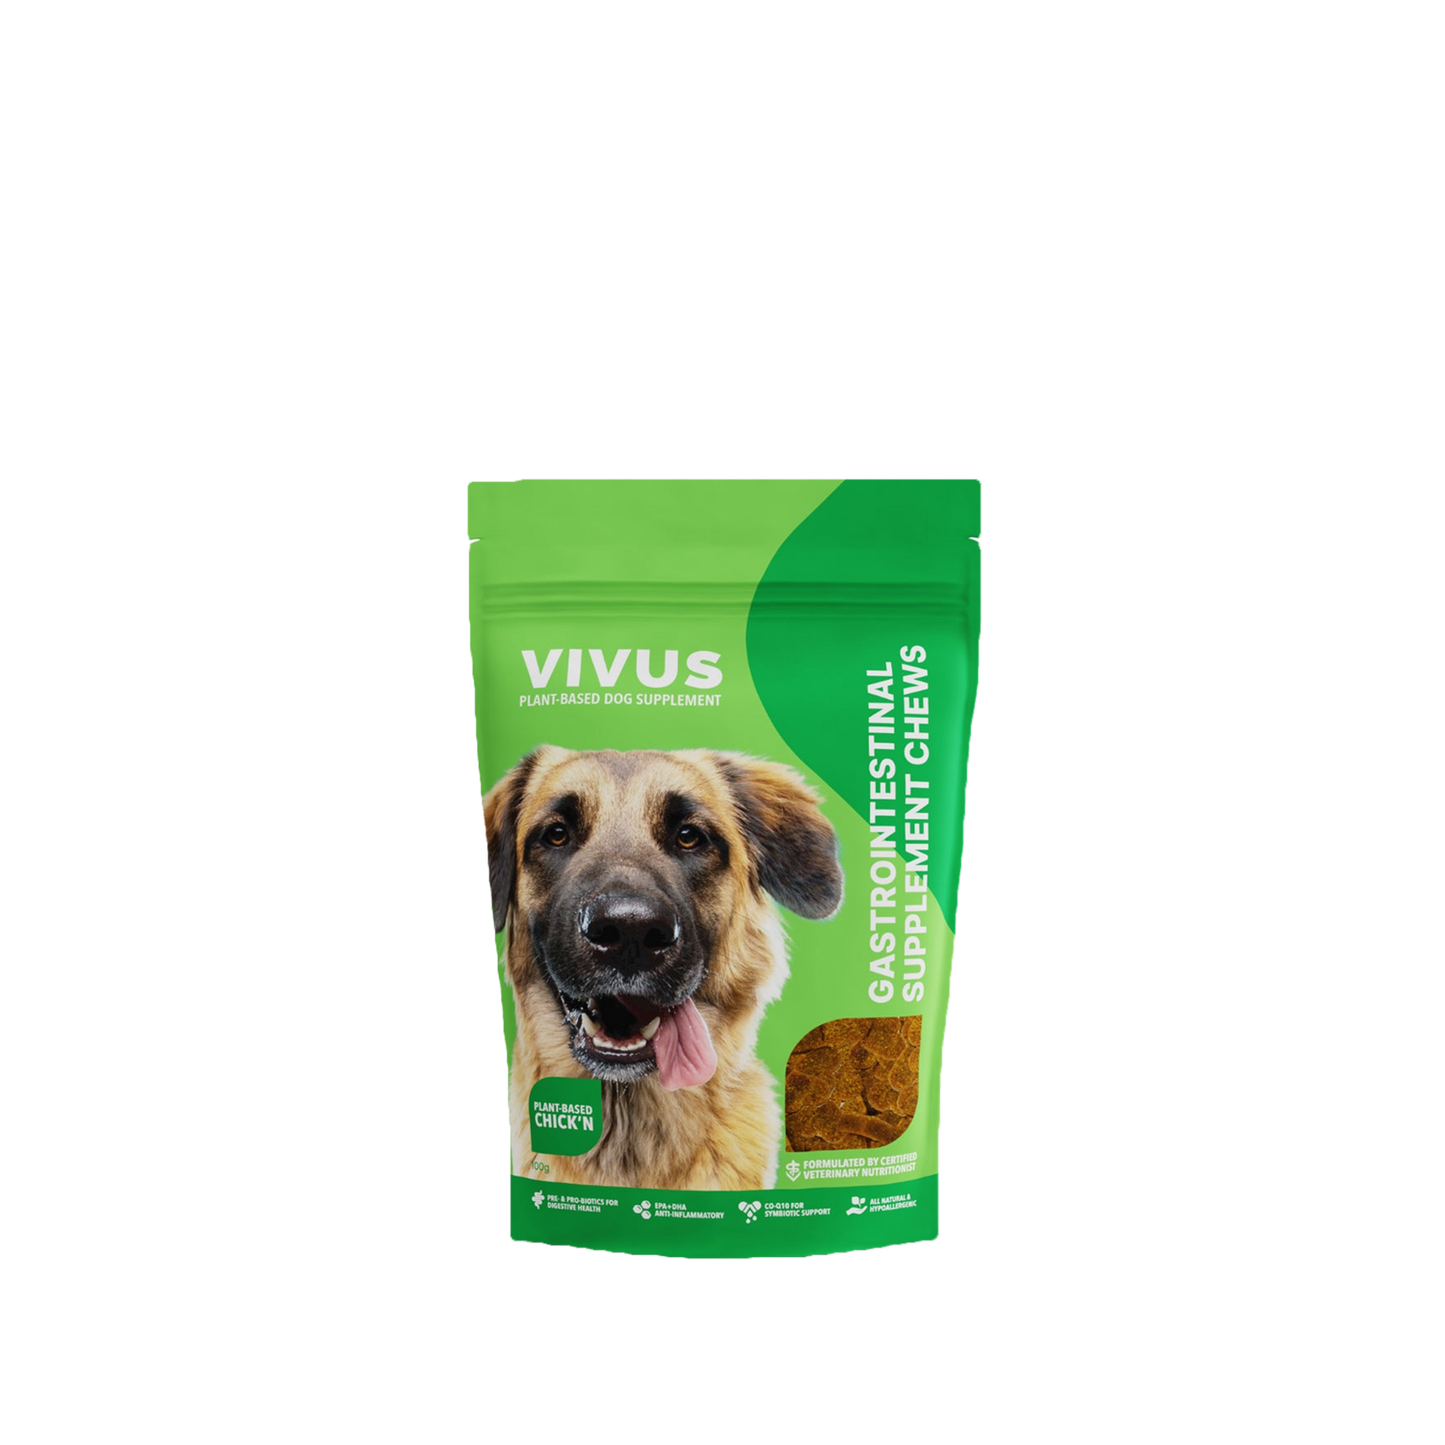 Vivus Gastrointestinal Support Supplement Chews - 100 g